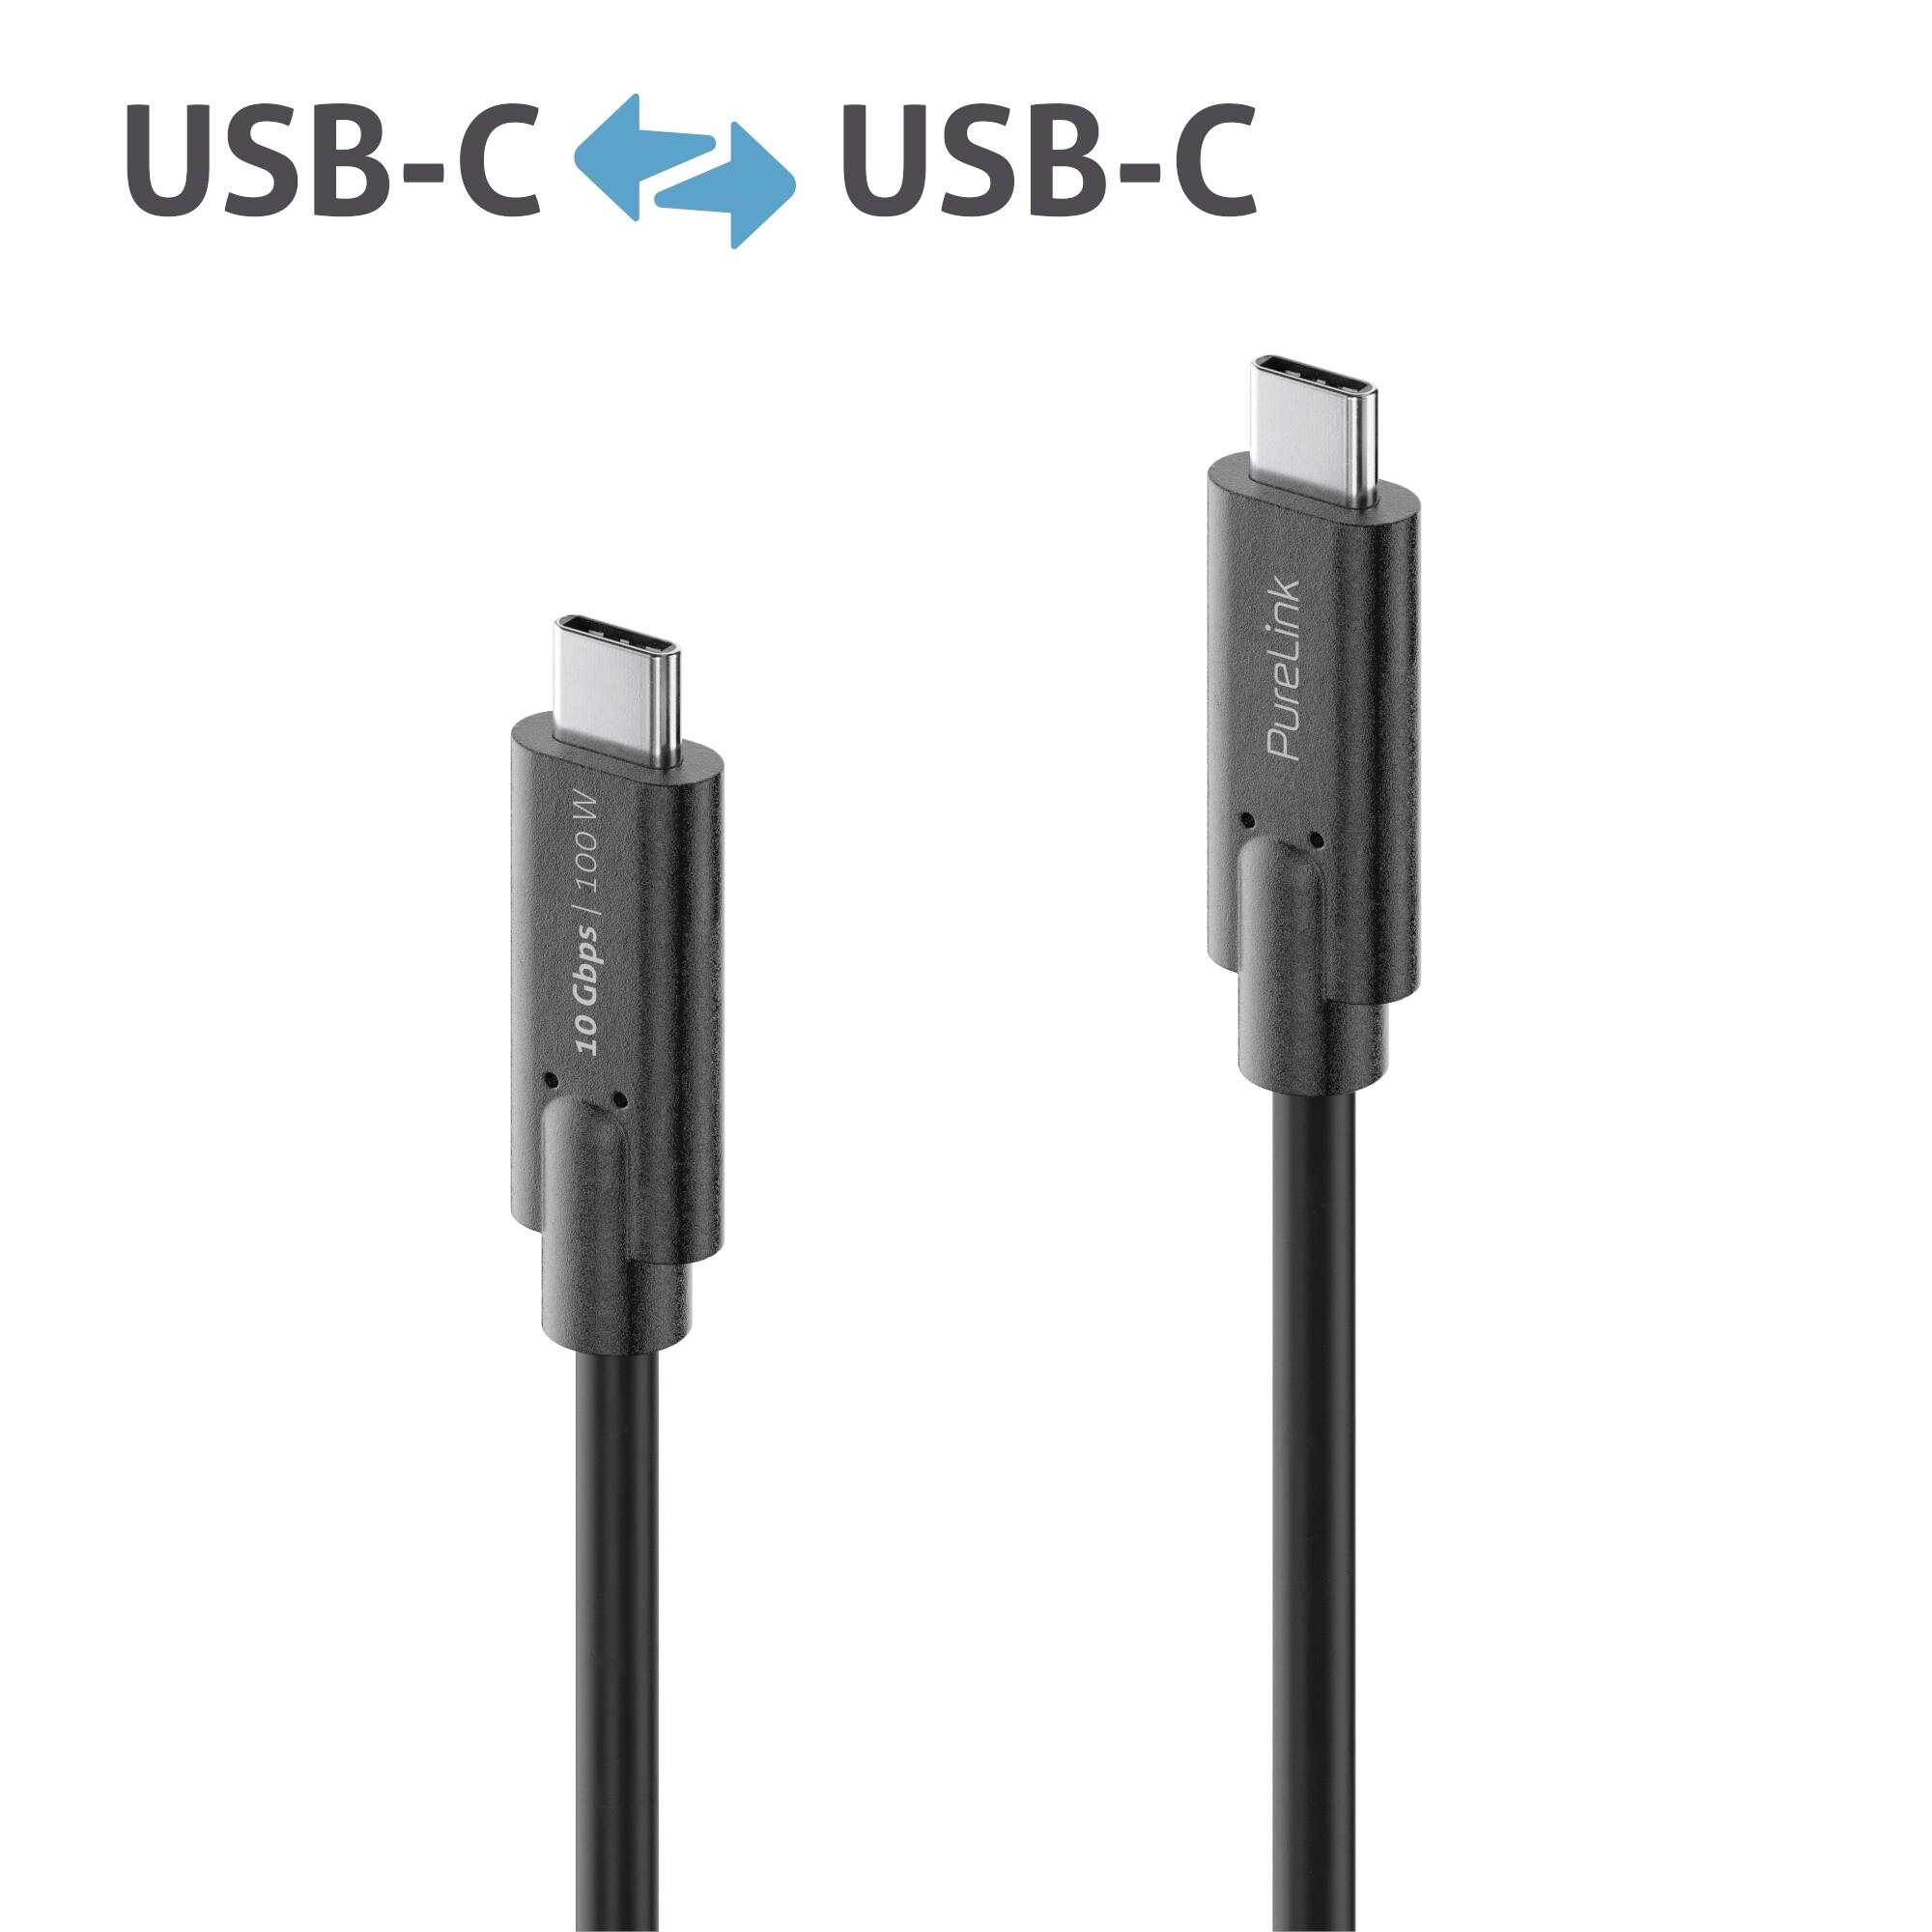 Purelink-IS2511-015-USB-C-auf-USB-C-Gen-2-Kabel-1-5m-schwarz